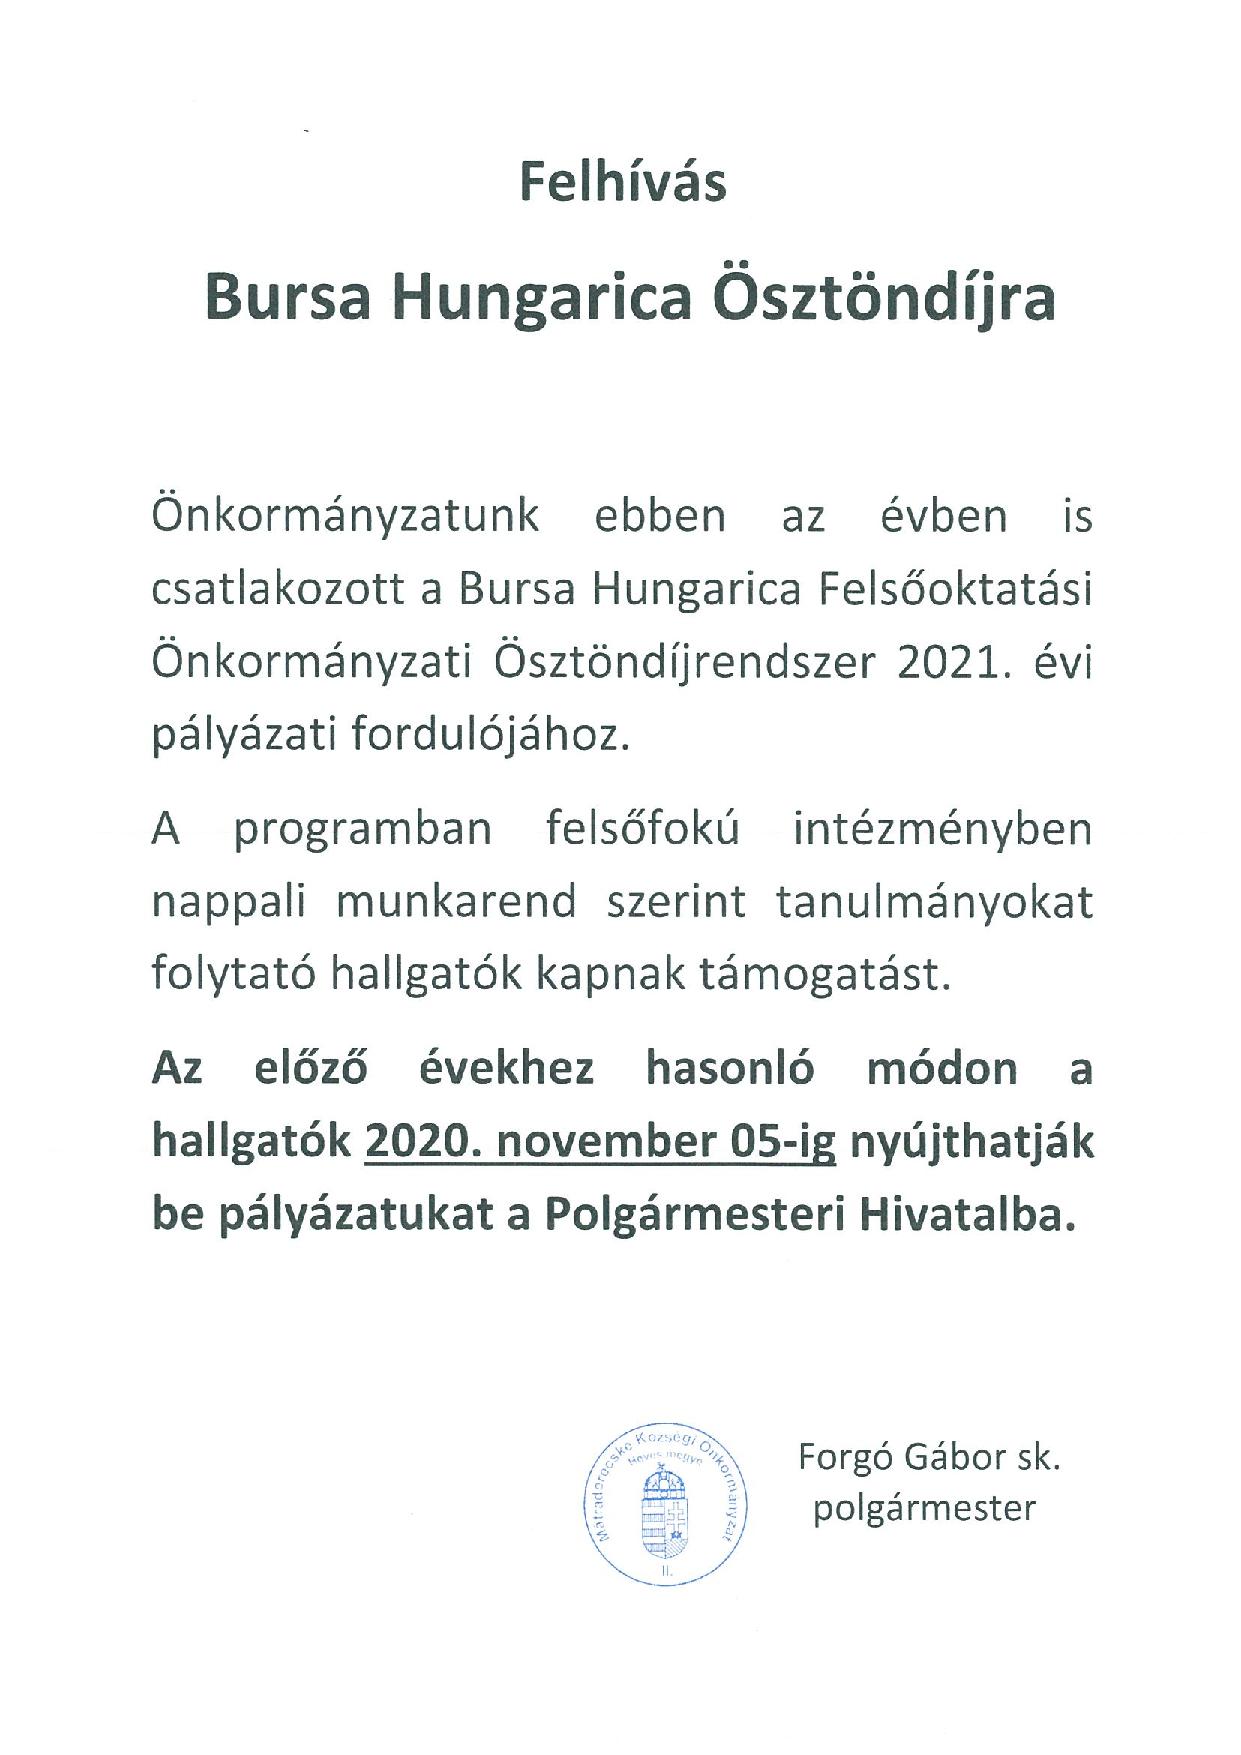 Bursa Hungarica ösztöndíj